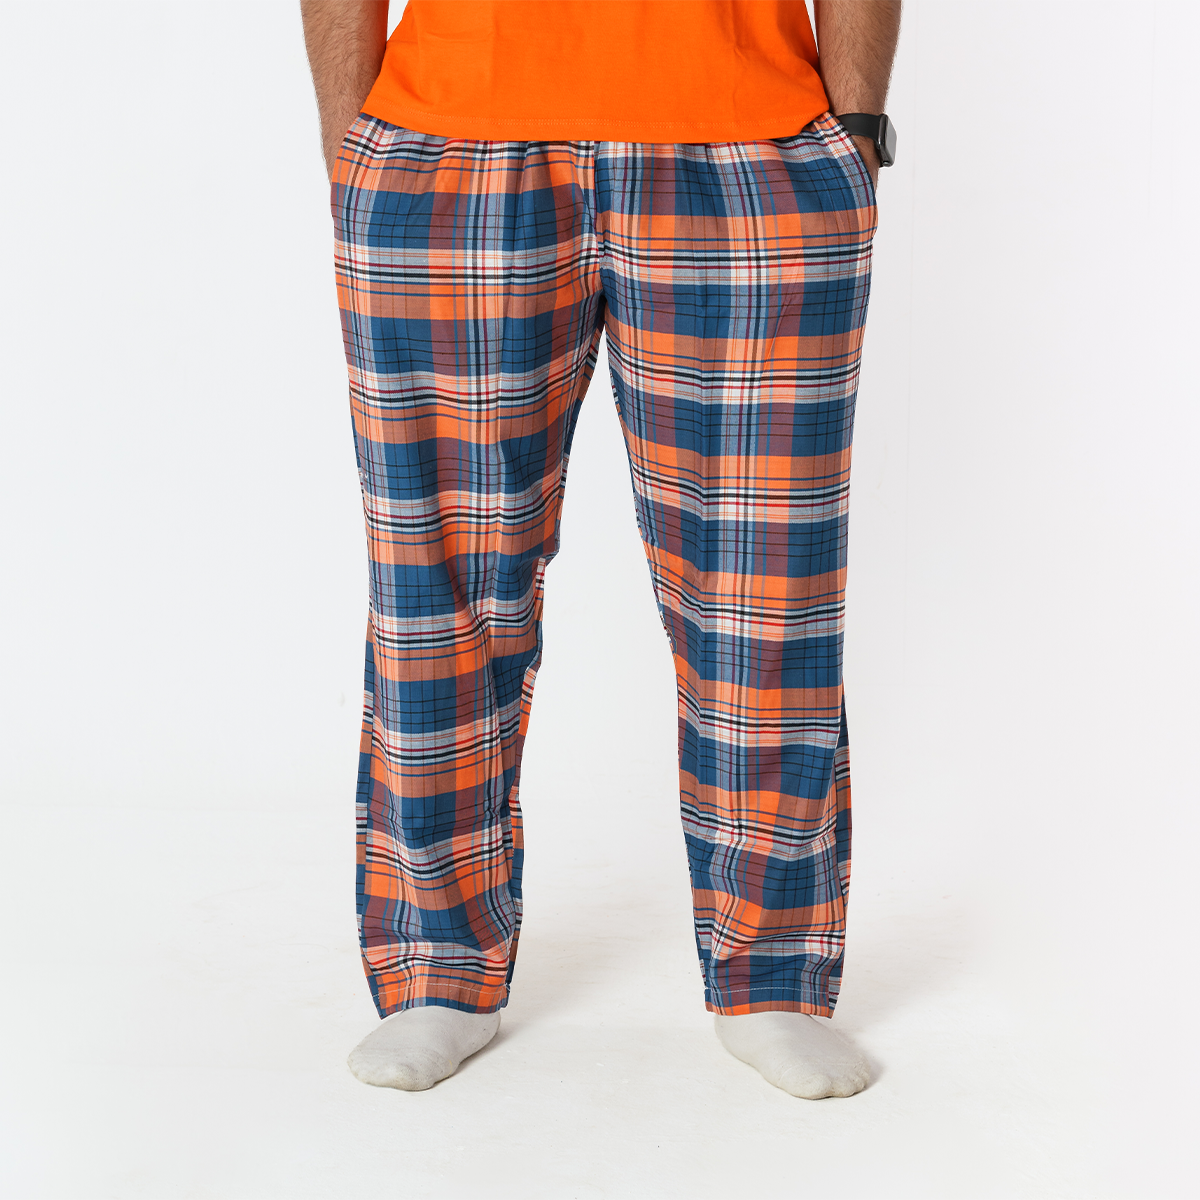 Orange Plaid Pyjama Pants set